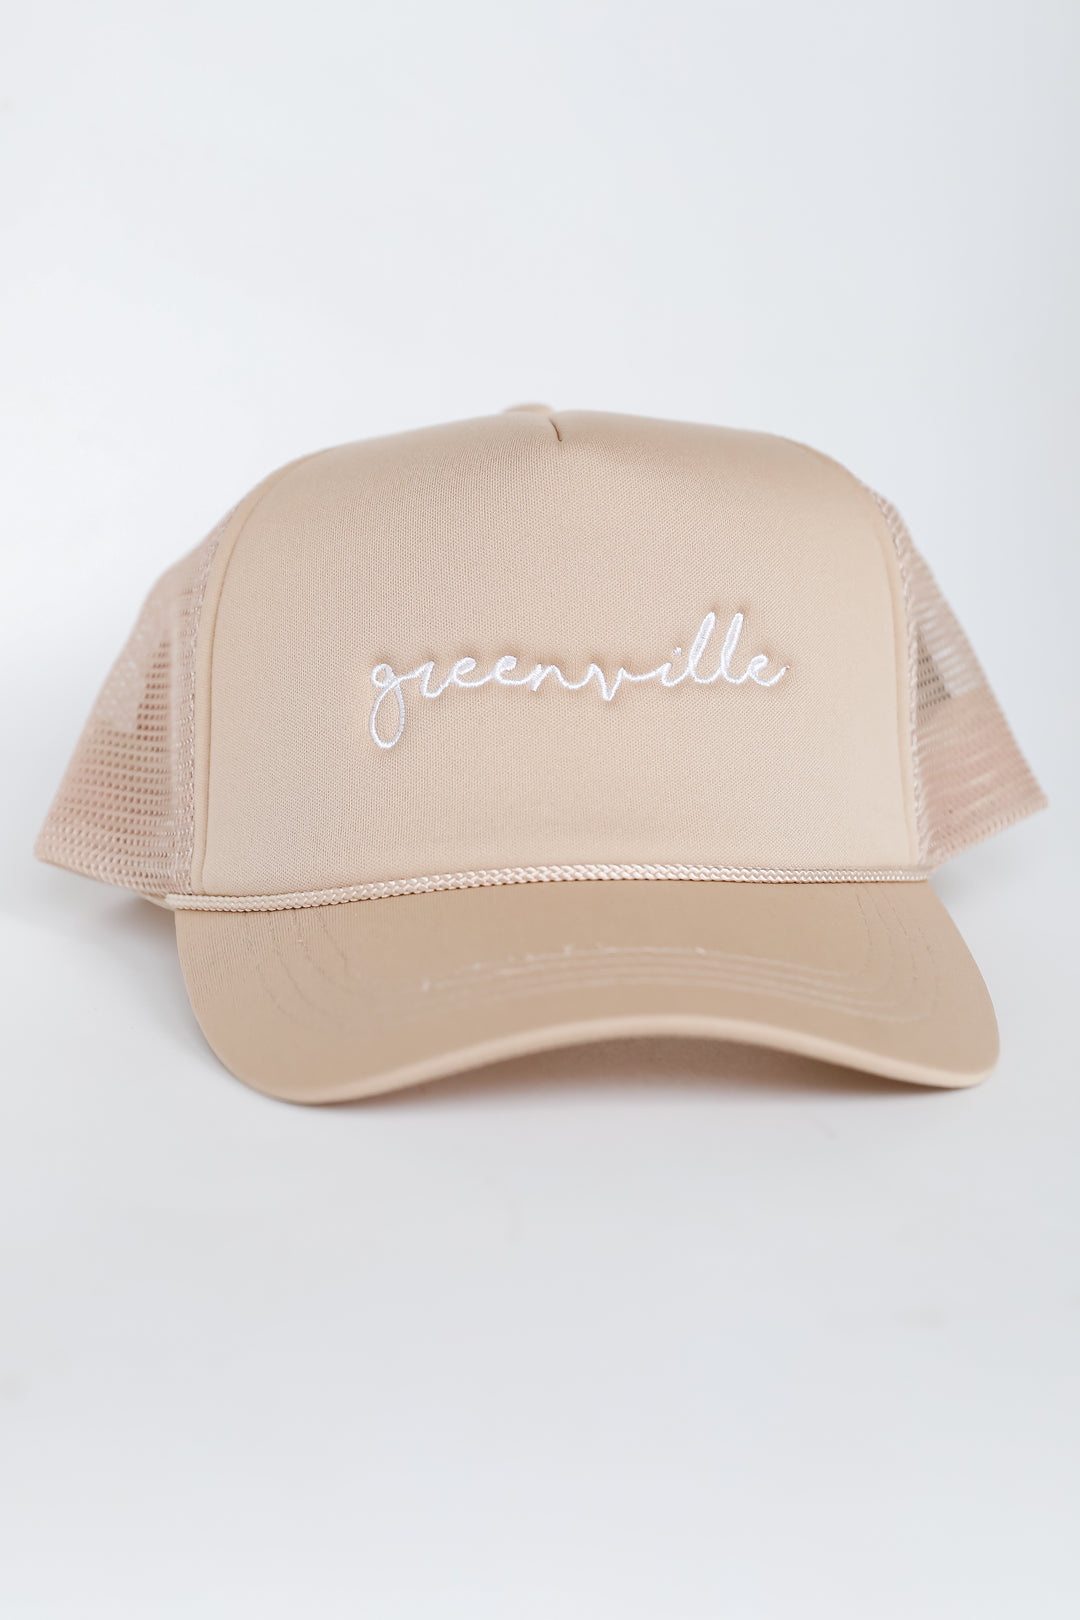 Greenville Trucker Hat